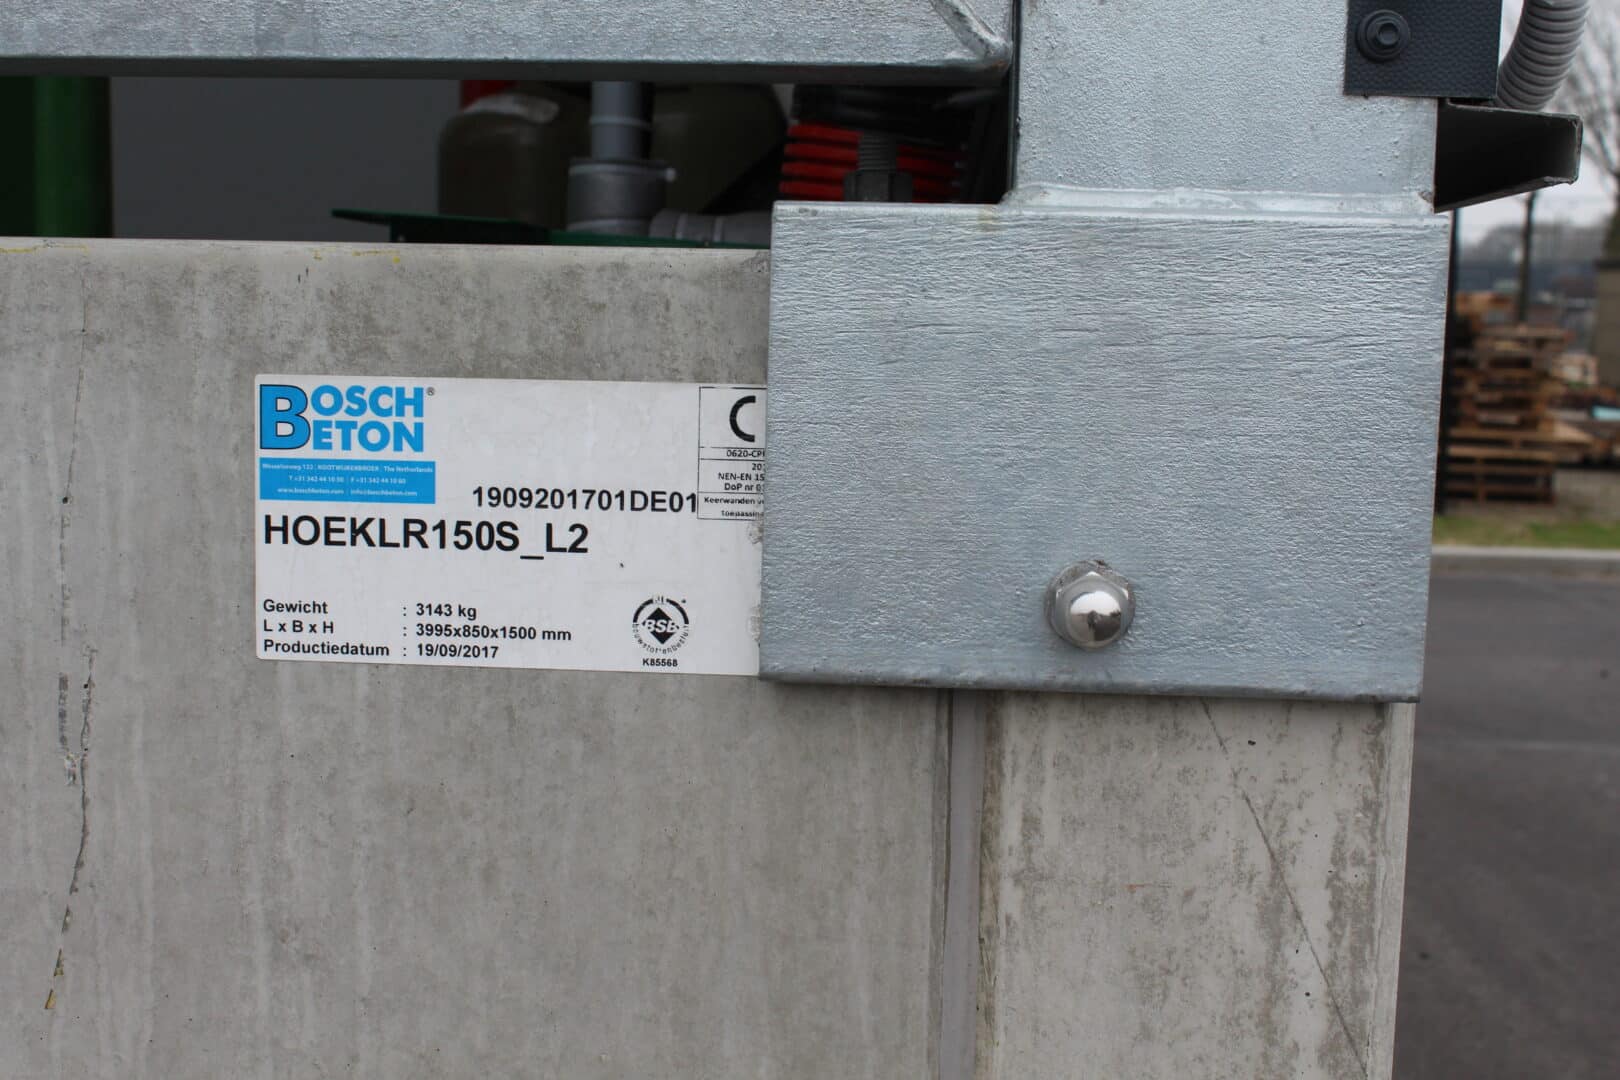 Bosch Beton - Keerwanden voor nieuwe milieustraat in Zuidwolde